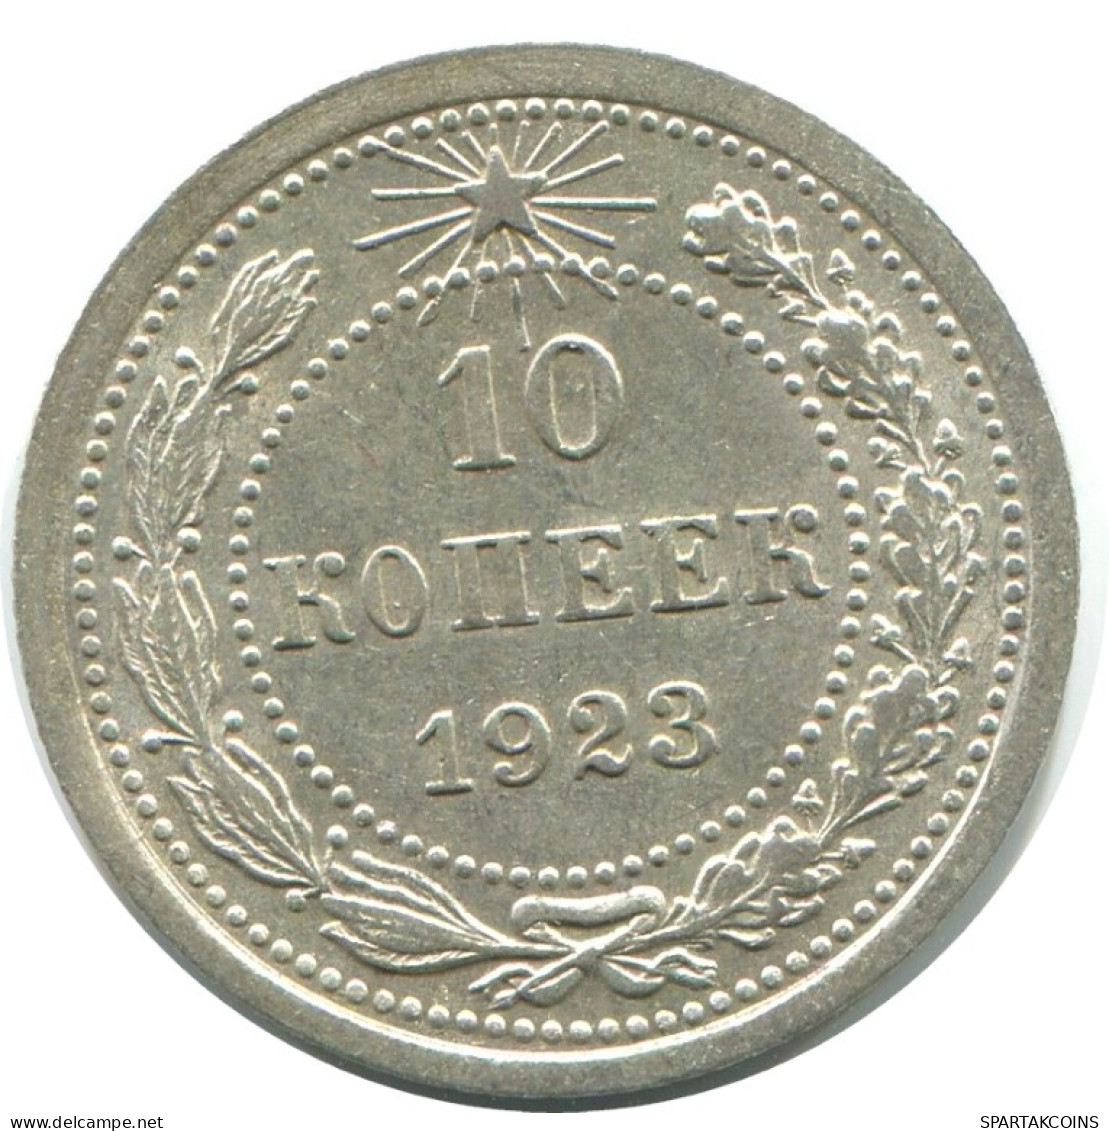 10 KOPEKS 1923 RUSSLAND RUSSIA RSFSR SILBER Münze HIGH GRADE #AE968.4.D.A - Russia